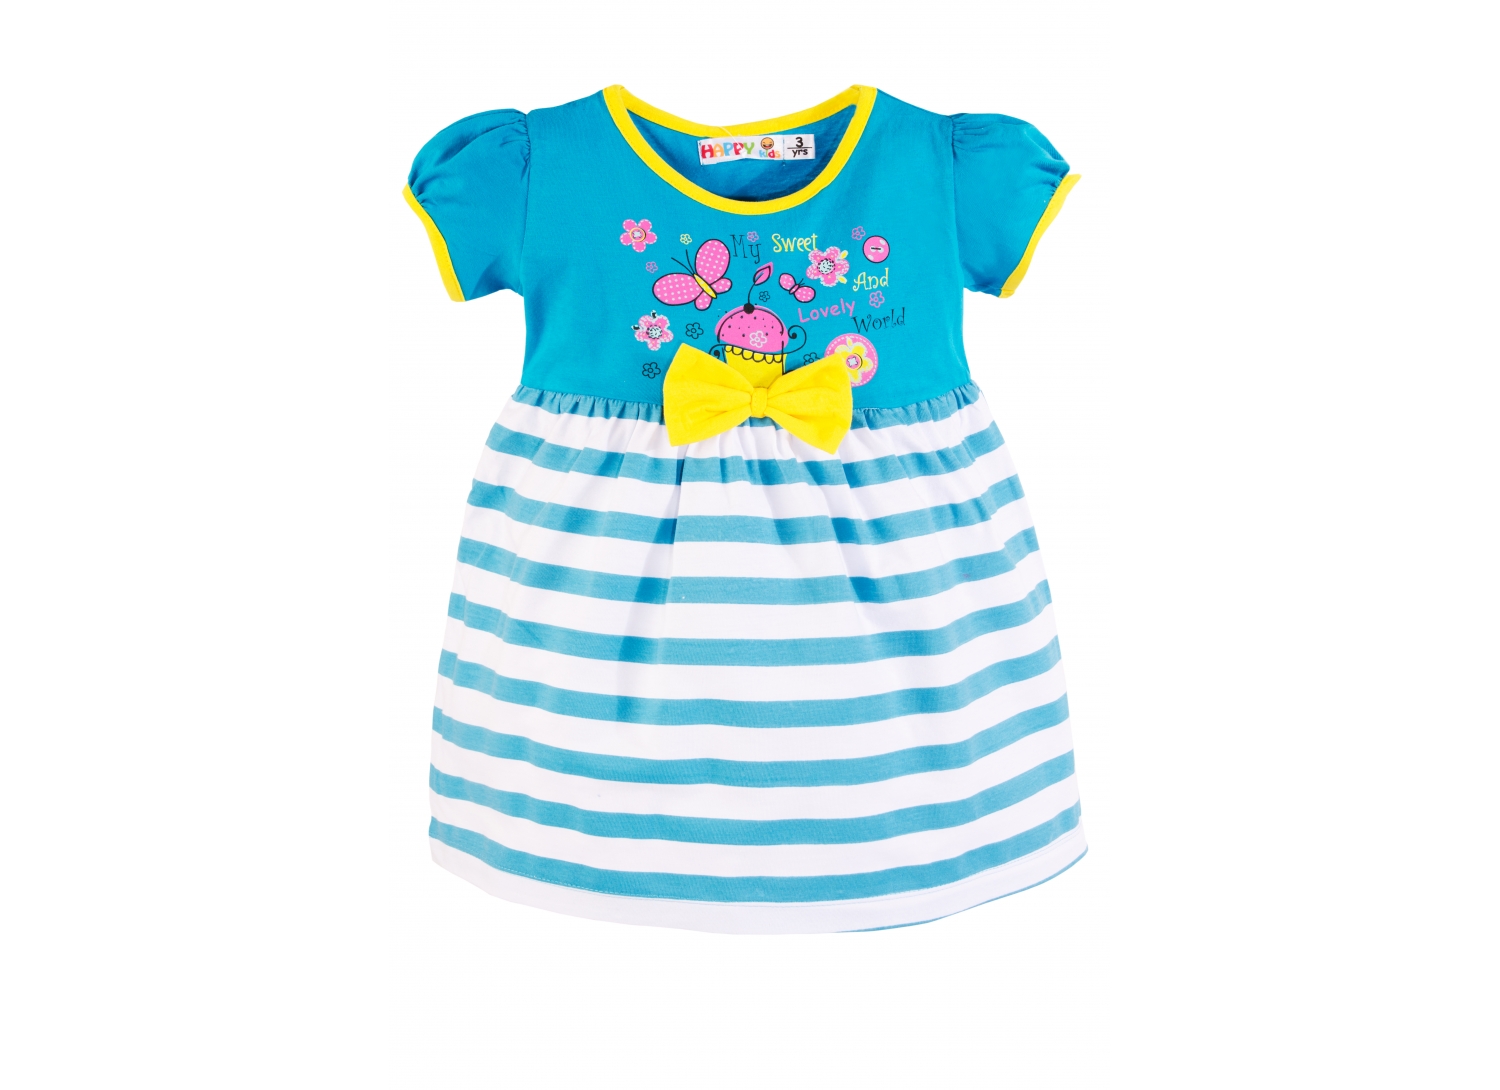 Хэппи девочкам. Одежда для детей Happy Kids. Платье для девочки Happy Baby. Bertula Kids платье. Neslim Kids платье разноцветное.